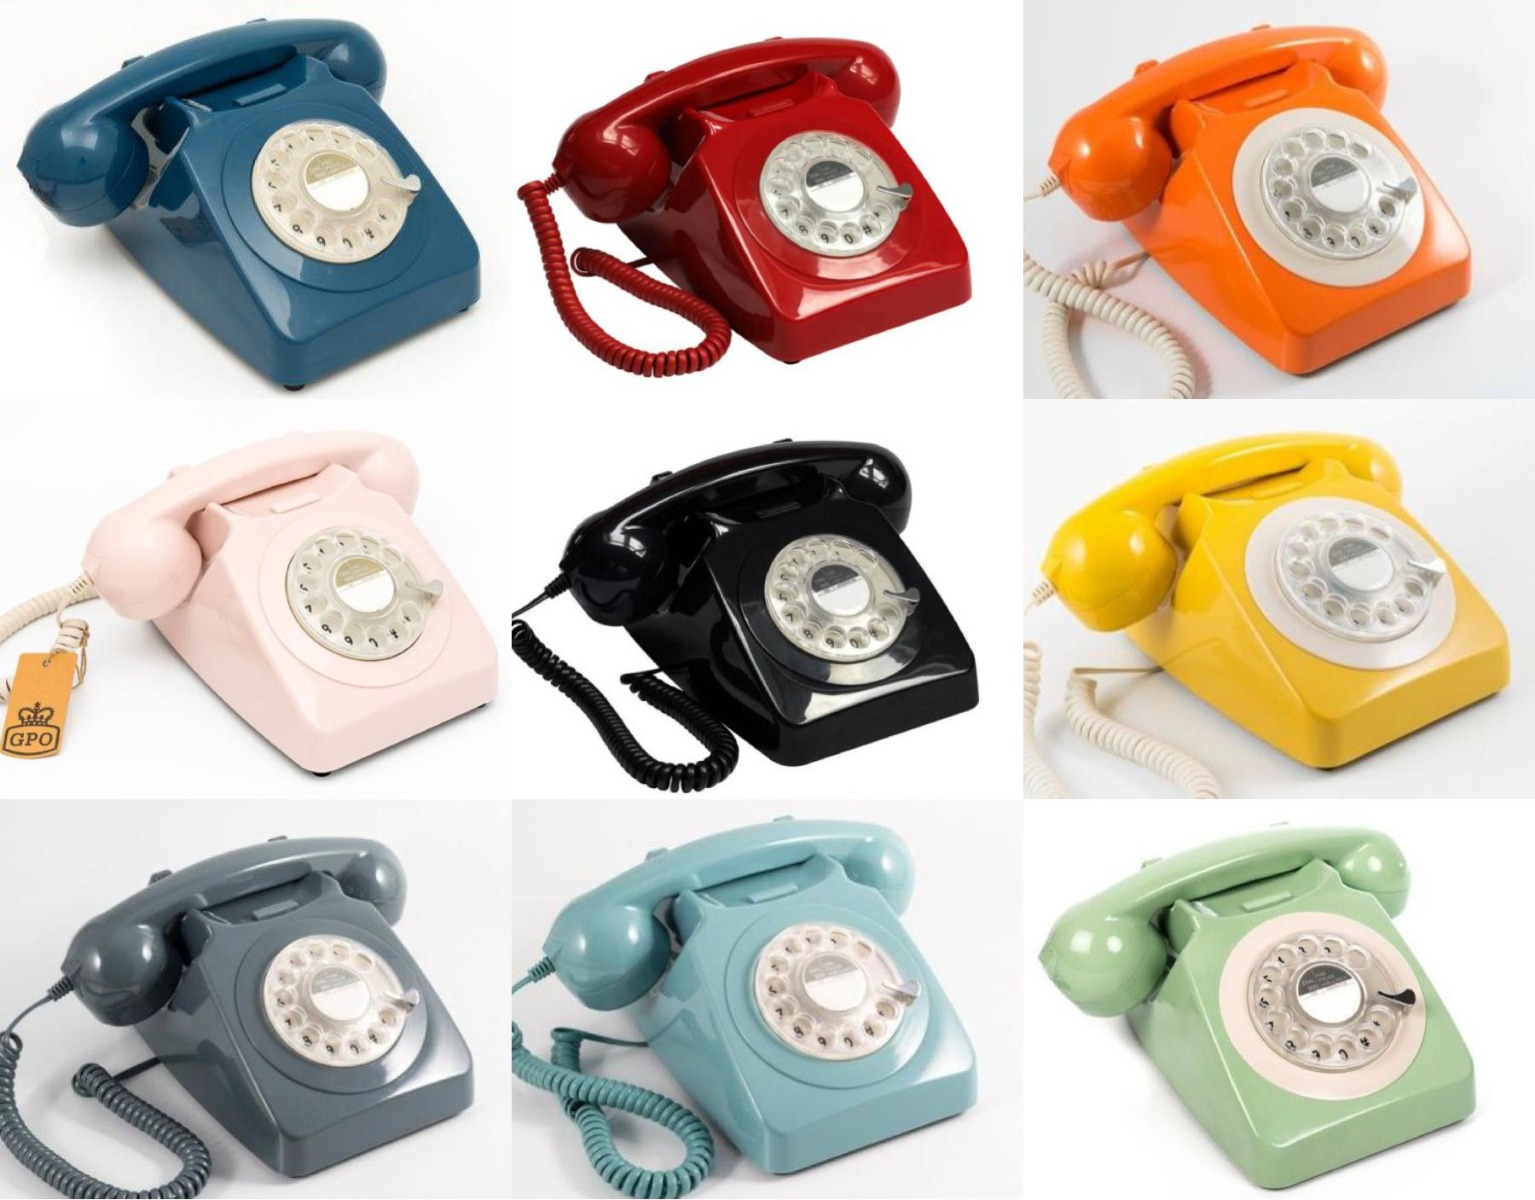 Telefoneren was nog nooit zo vintage! 3